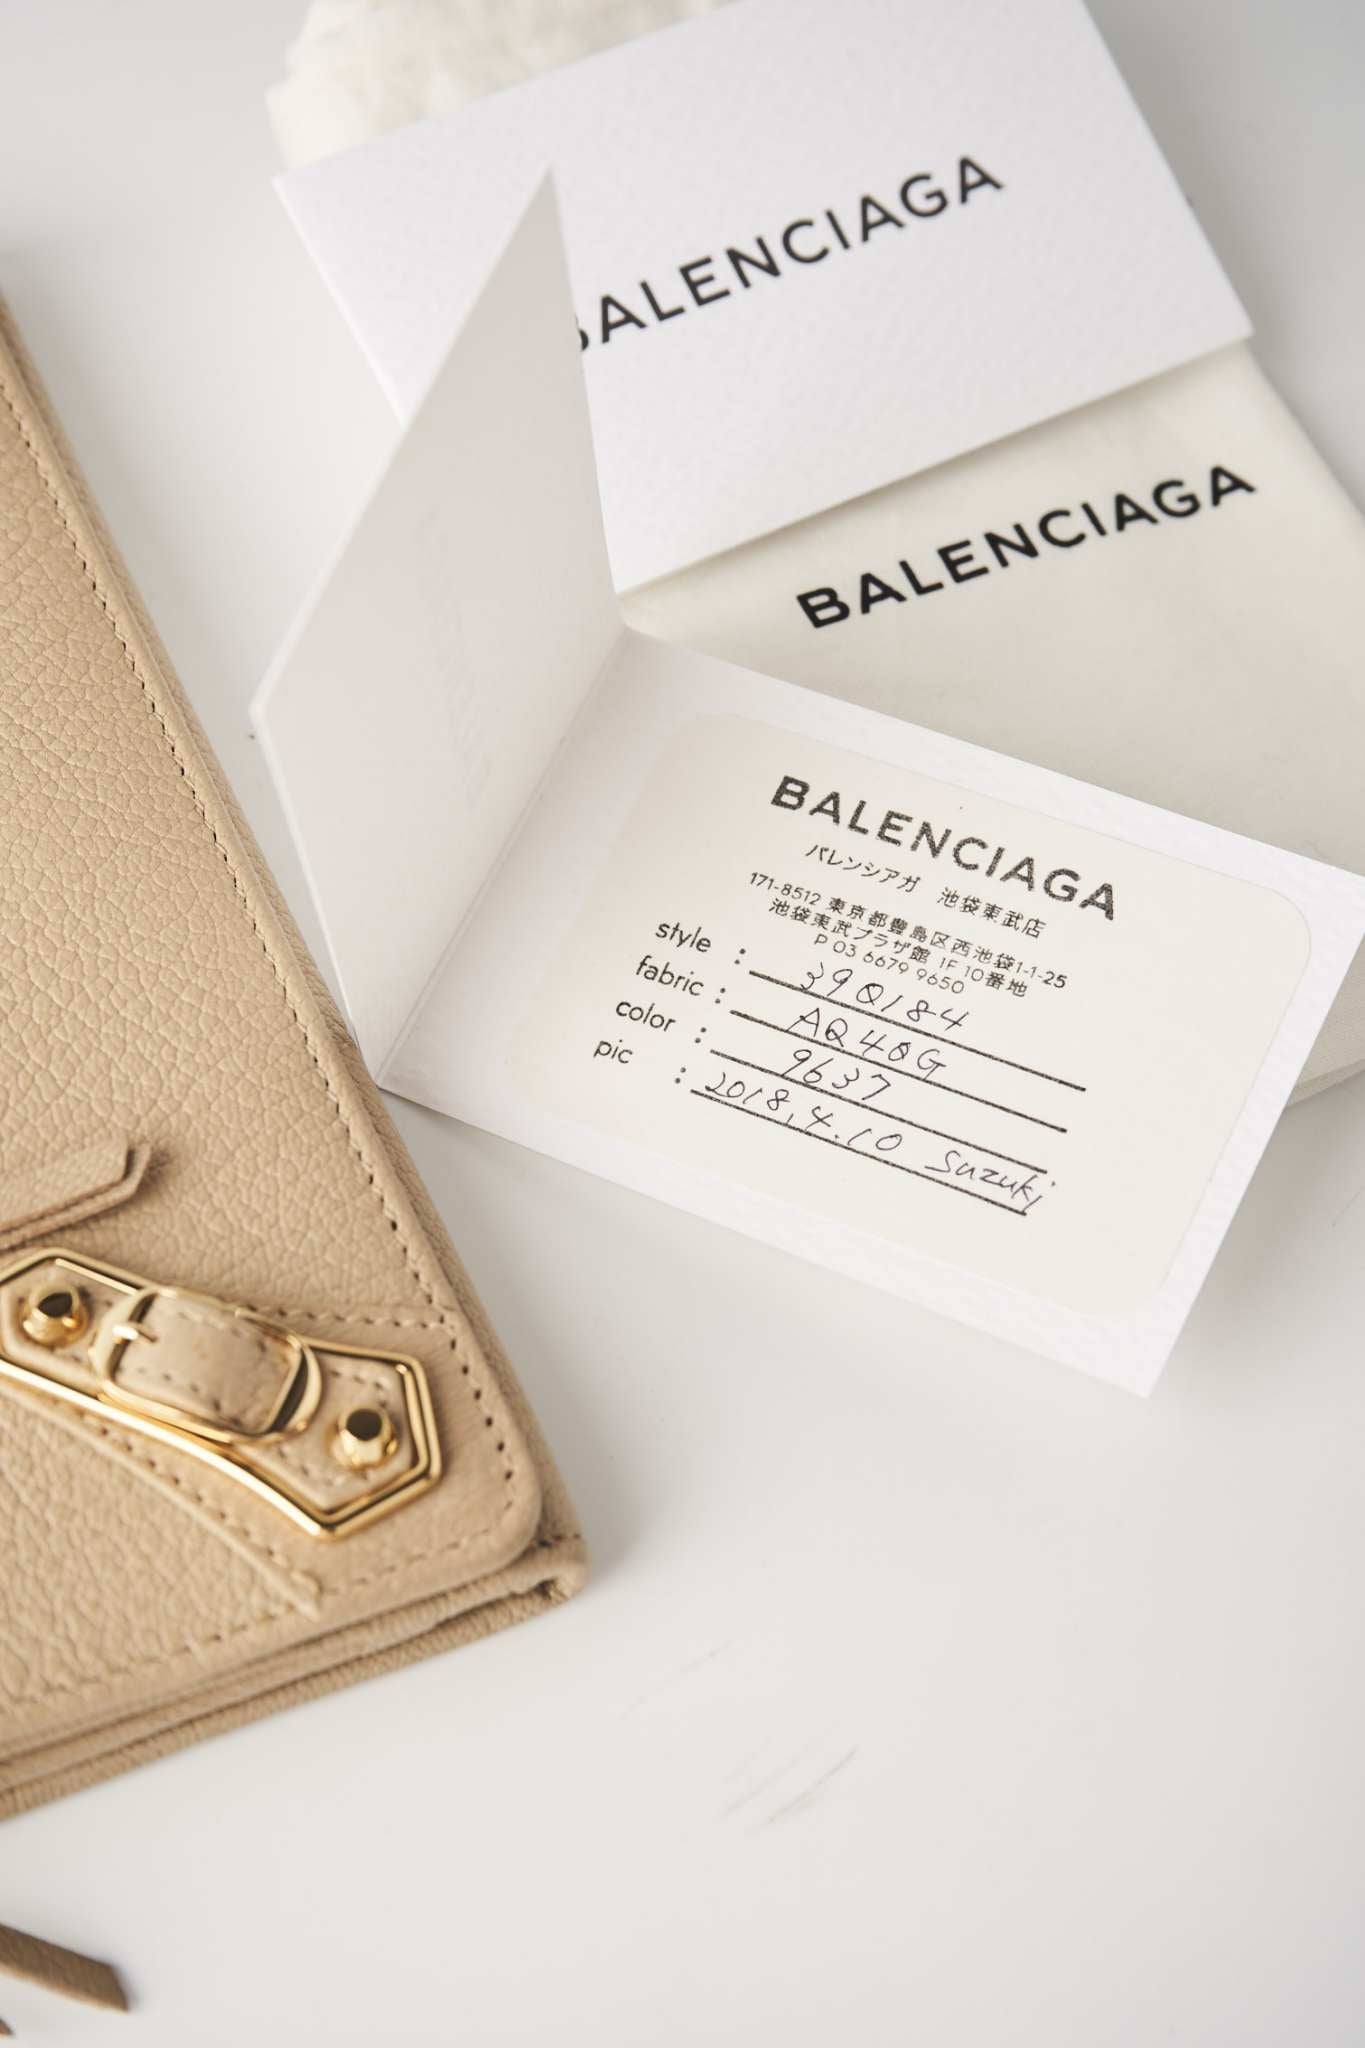 Balenciaga long wallet